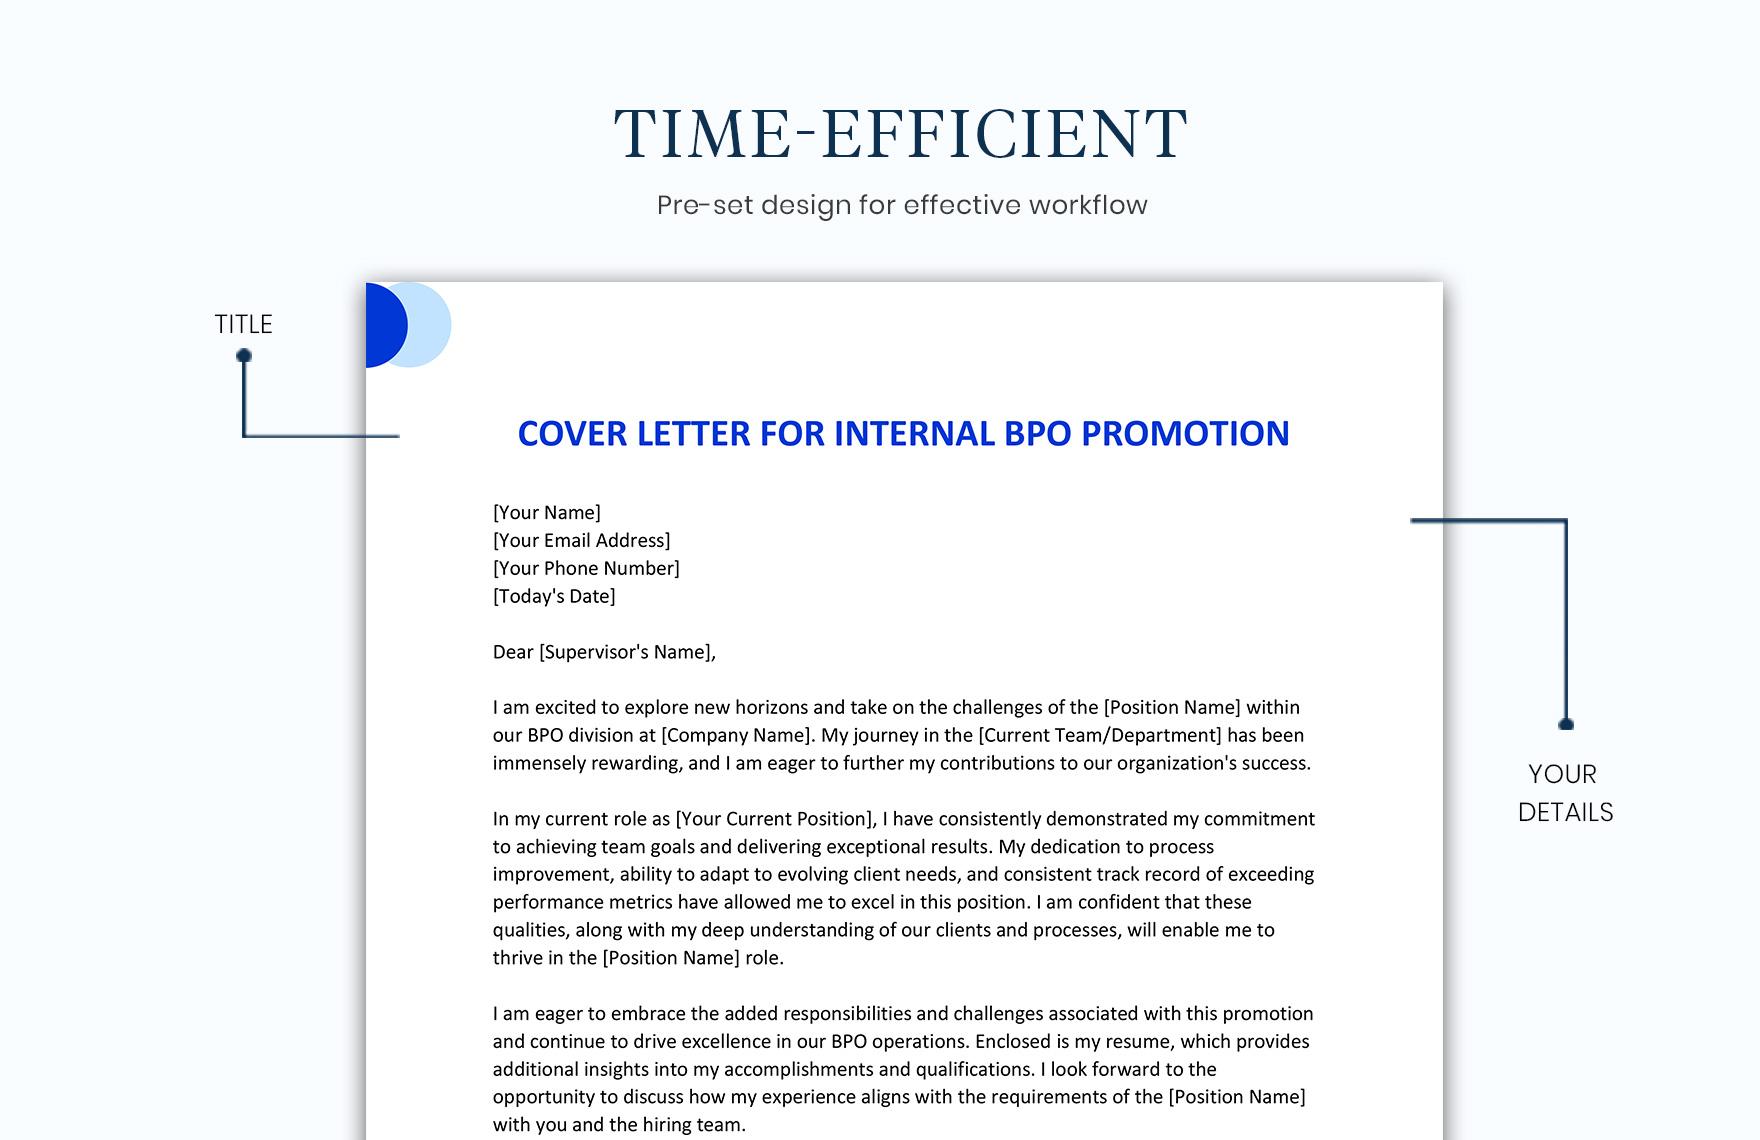 Cover Letter For Internal BPO Promotion